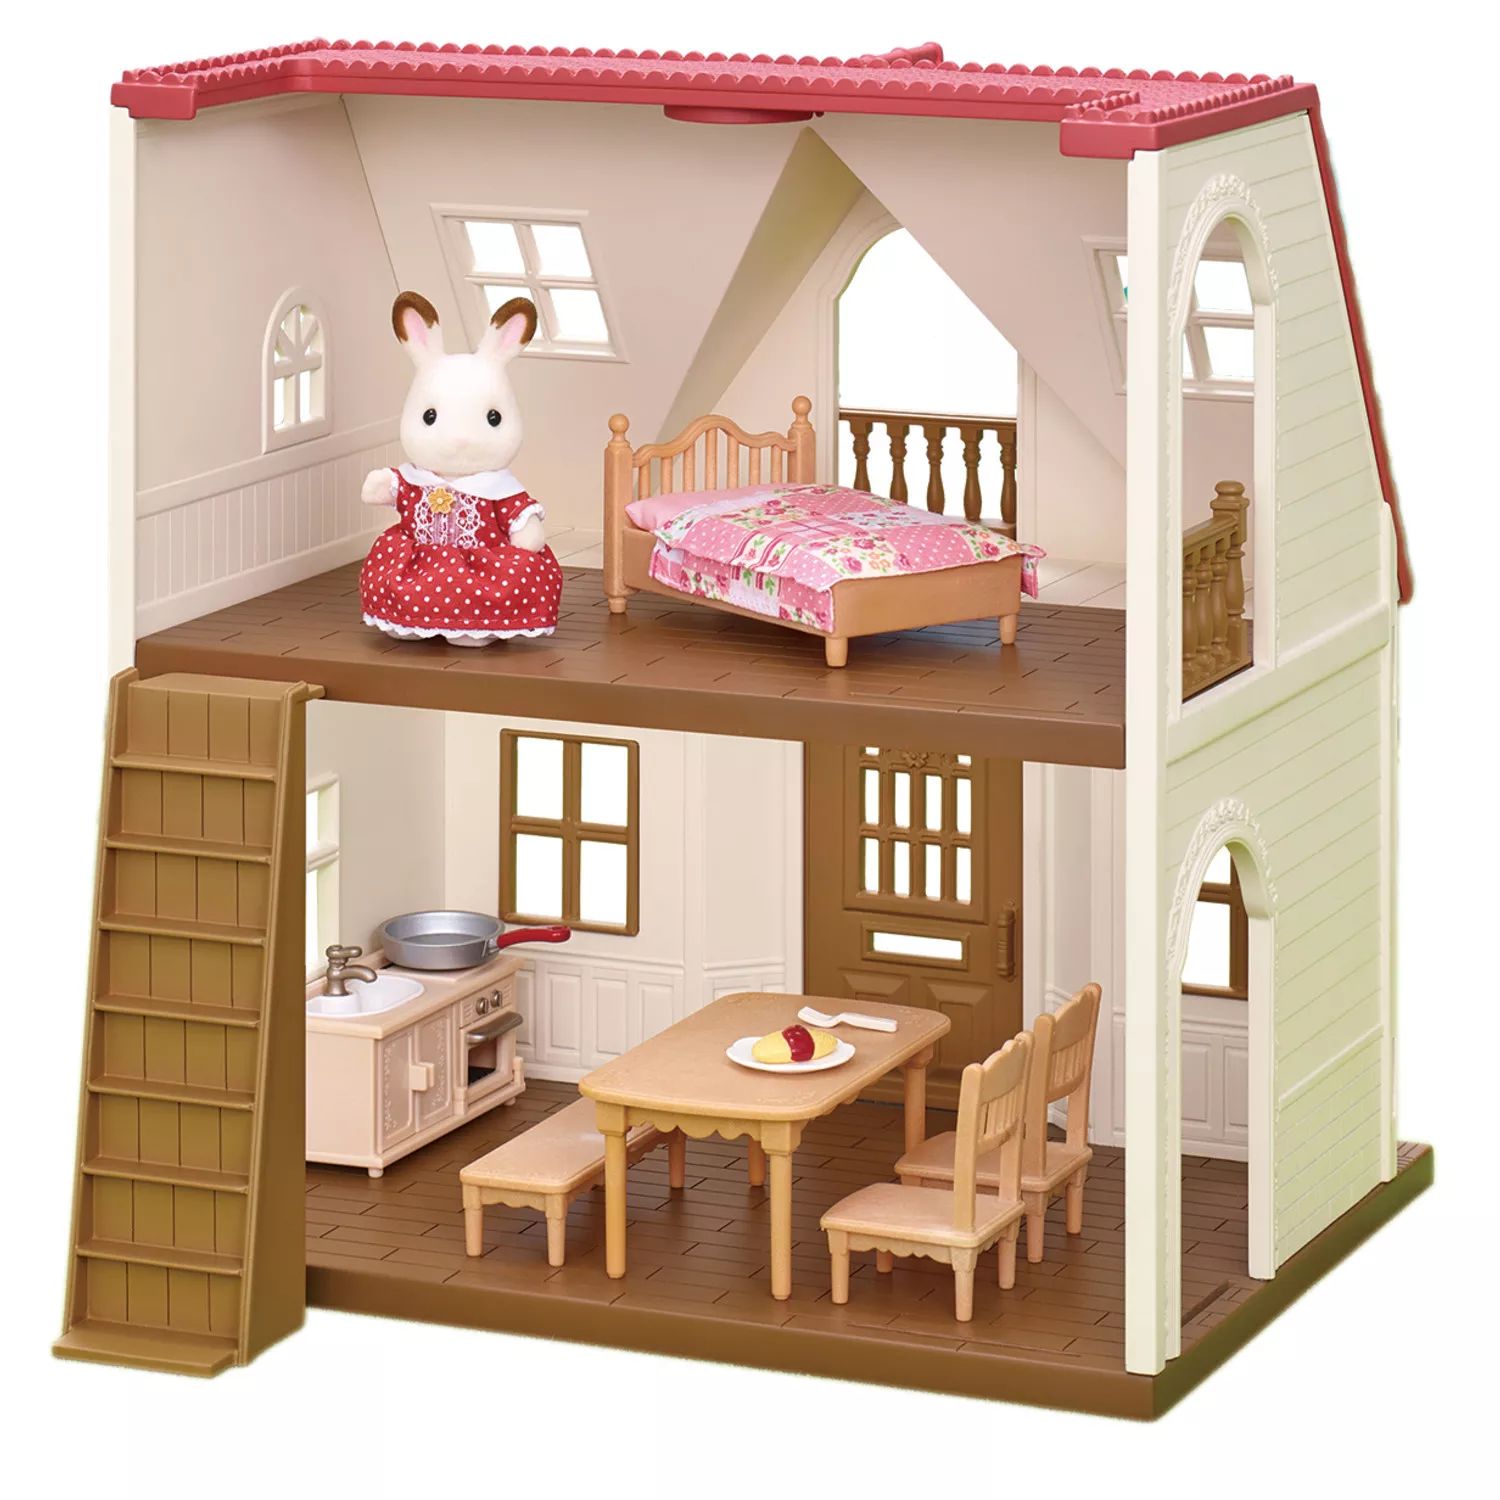 Уютный кукольный домик Calico Critters с красной крышей, игровой набор с фигурной мебелью и аксессуарами Calico Critters